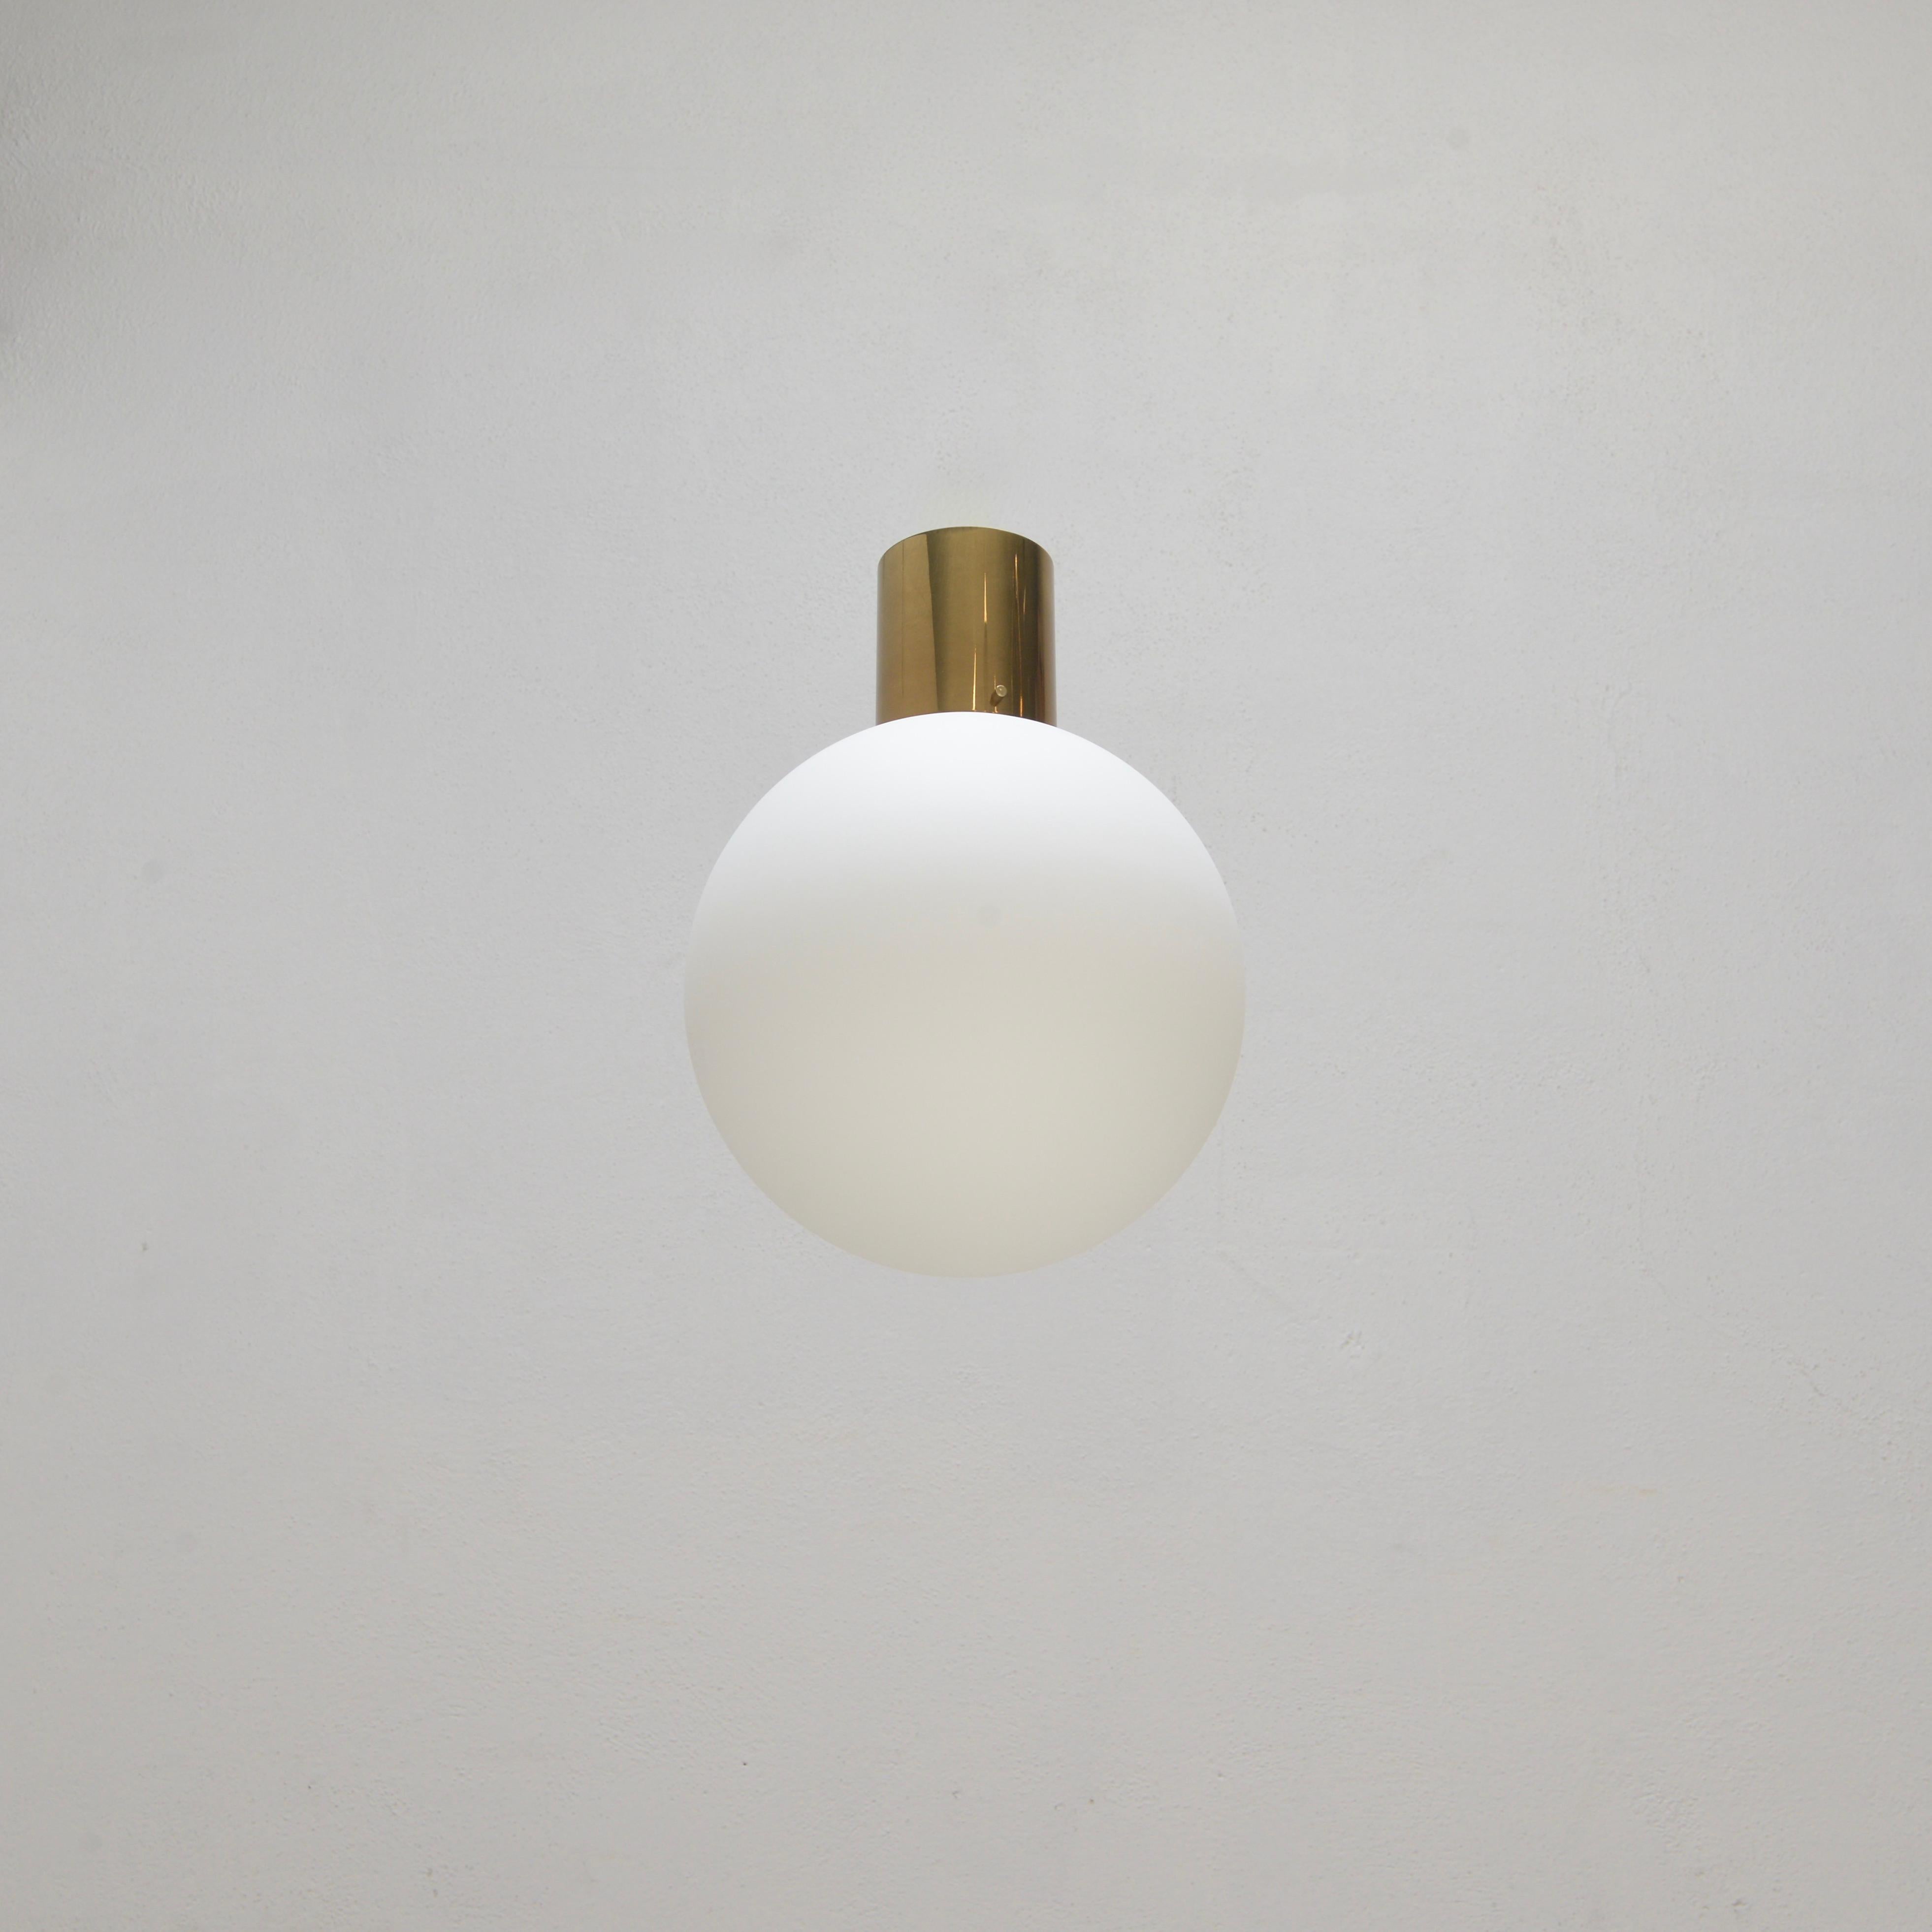 Le luminaire encastré PLUnet de Lumfardo Luminiaires fait partie de notre collection contemporaine. Le PLUnet est un design simple mais élégant, inspiré de la modernité du milieu du siècle, d'un luminaire à globe encastré en laiton patiné et verre.